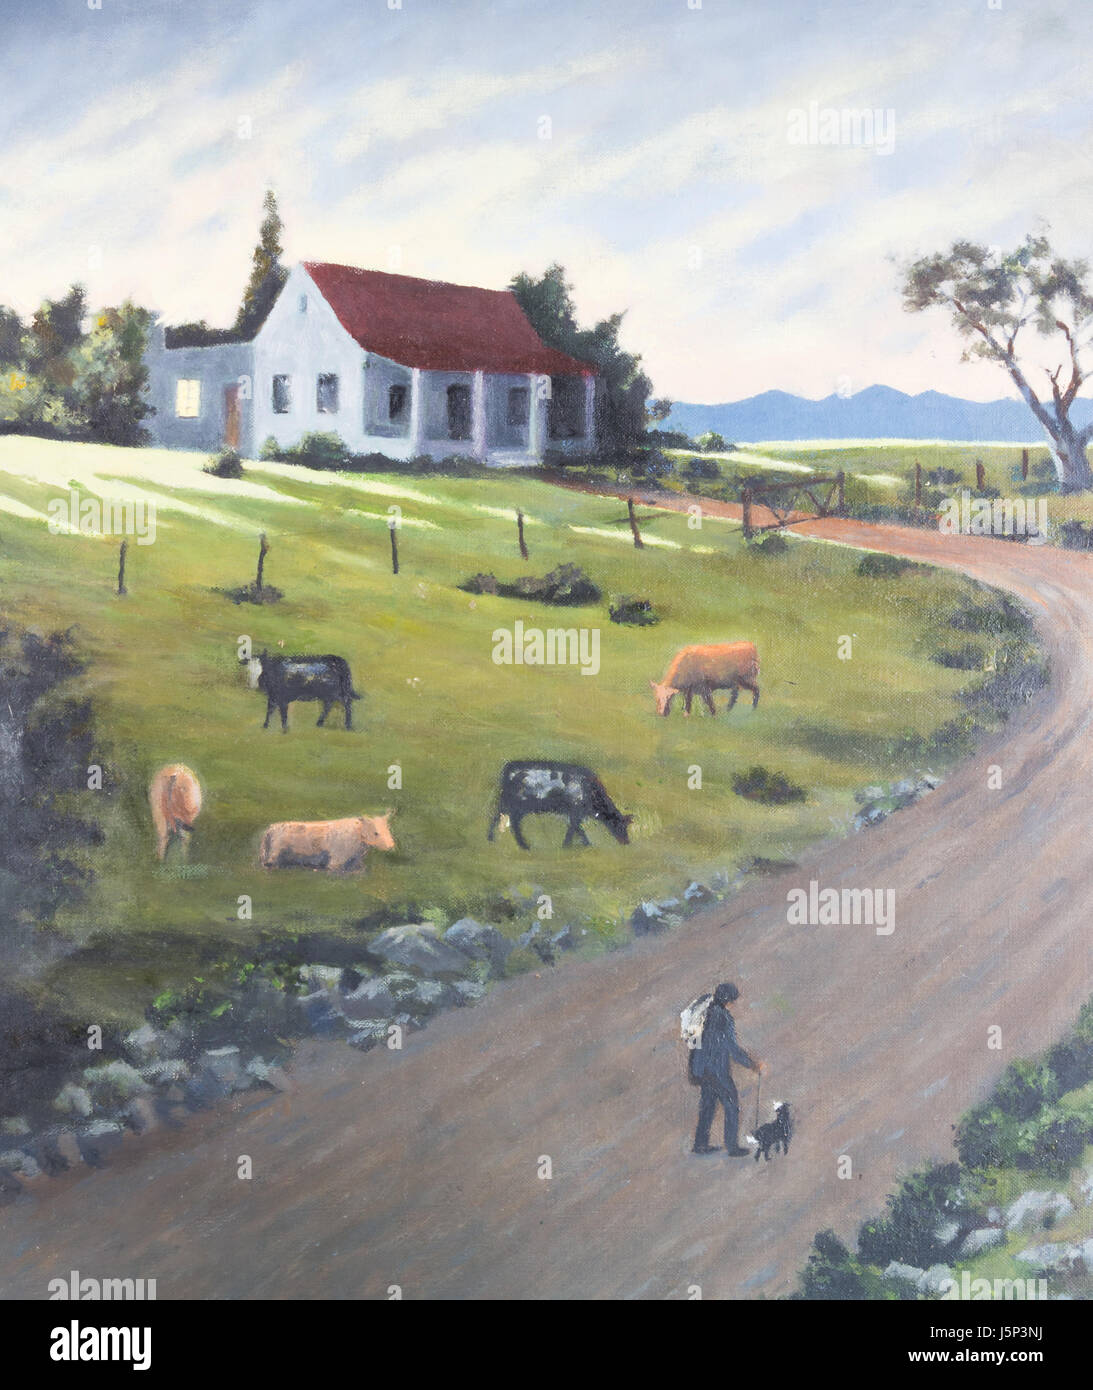 Art peinture d'humble ferme en gîte, au coucher du soleil avec les bovins herder et promenade de chiens le long de routes de campagne, de retourner à la maison et vaches qui paissent dans le pré Banque D'Images